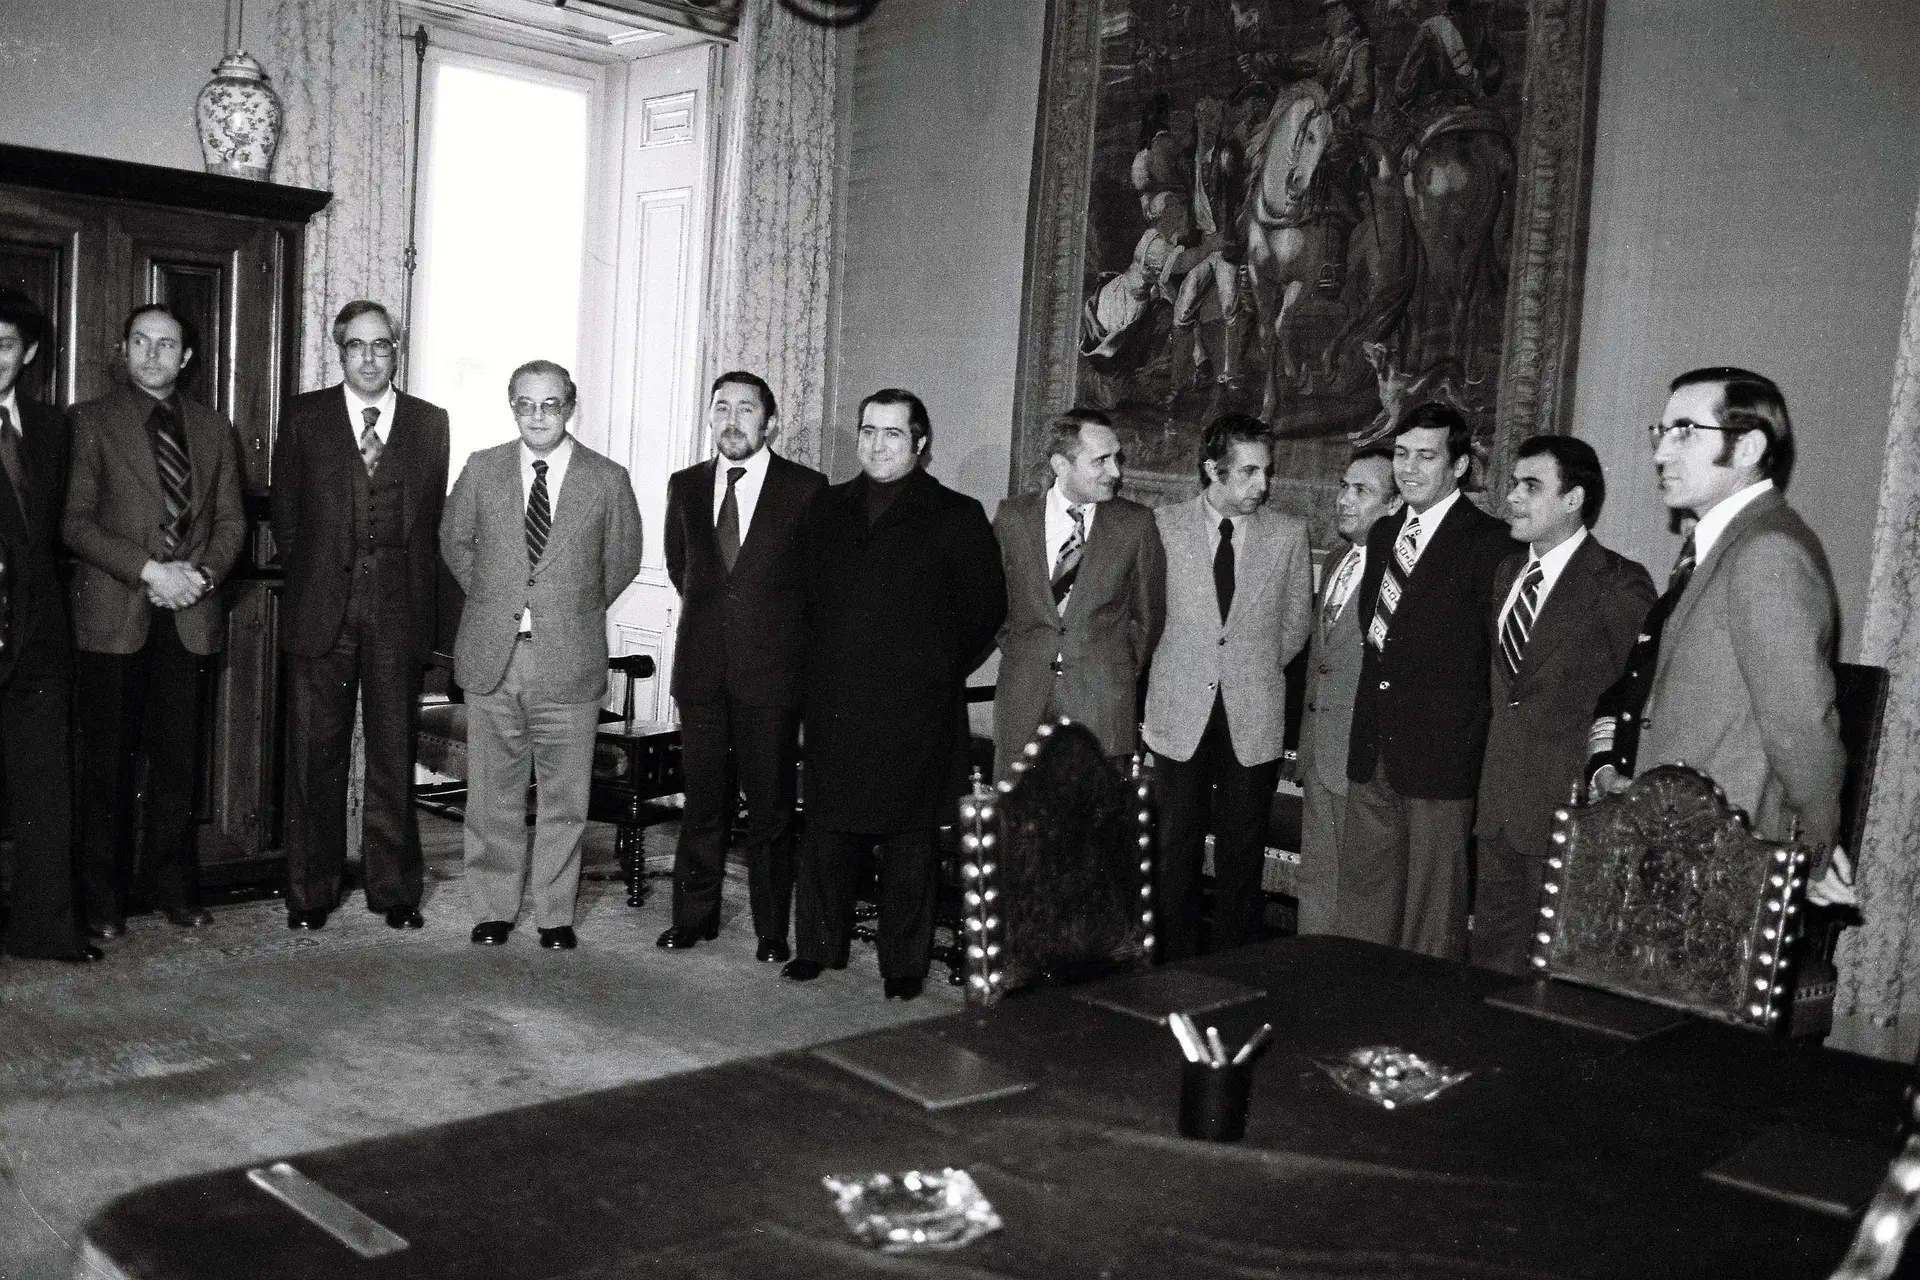 Capitães de Abril, membros do Conselho da Revolução - António Ramalho Eanes, Vasco Lourenço, Vasco Almeida e Costa, Melo Antunes, Garcia Leandro, entre outros, 1975.